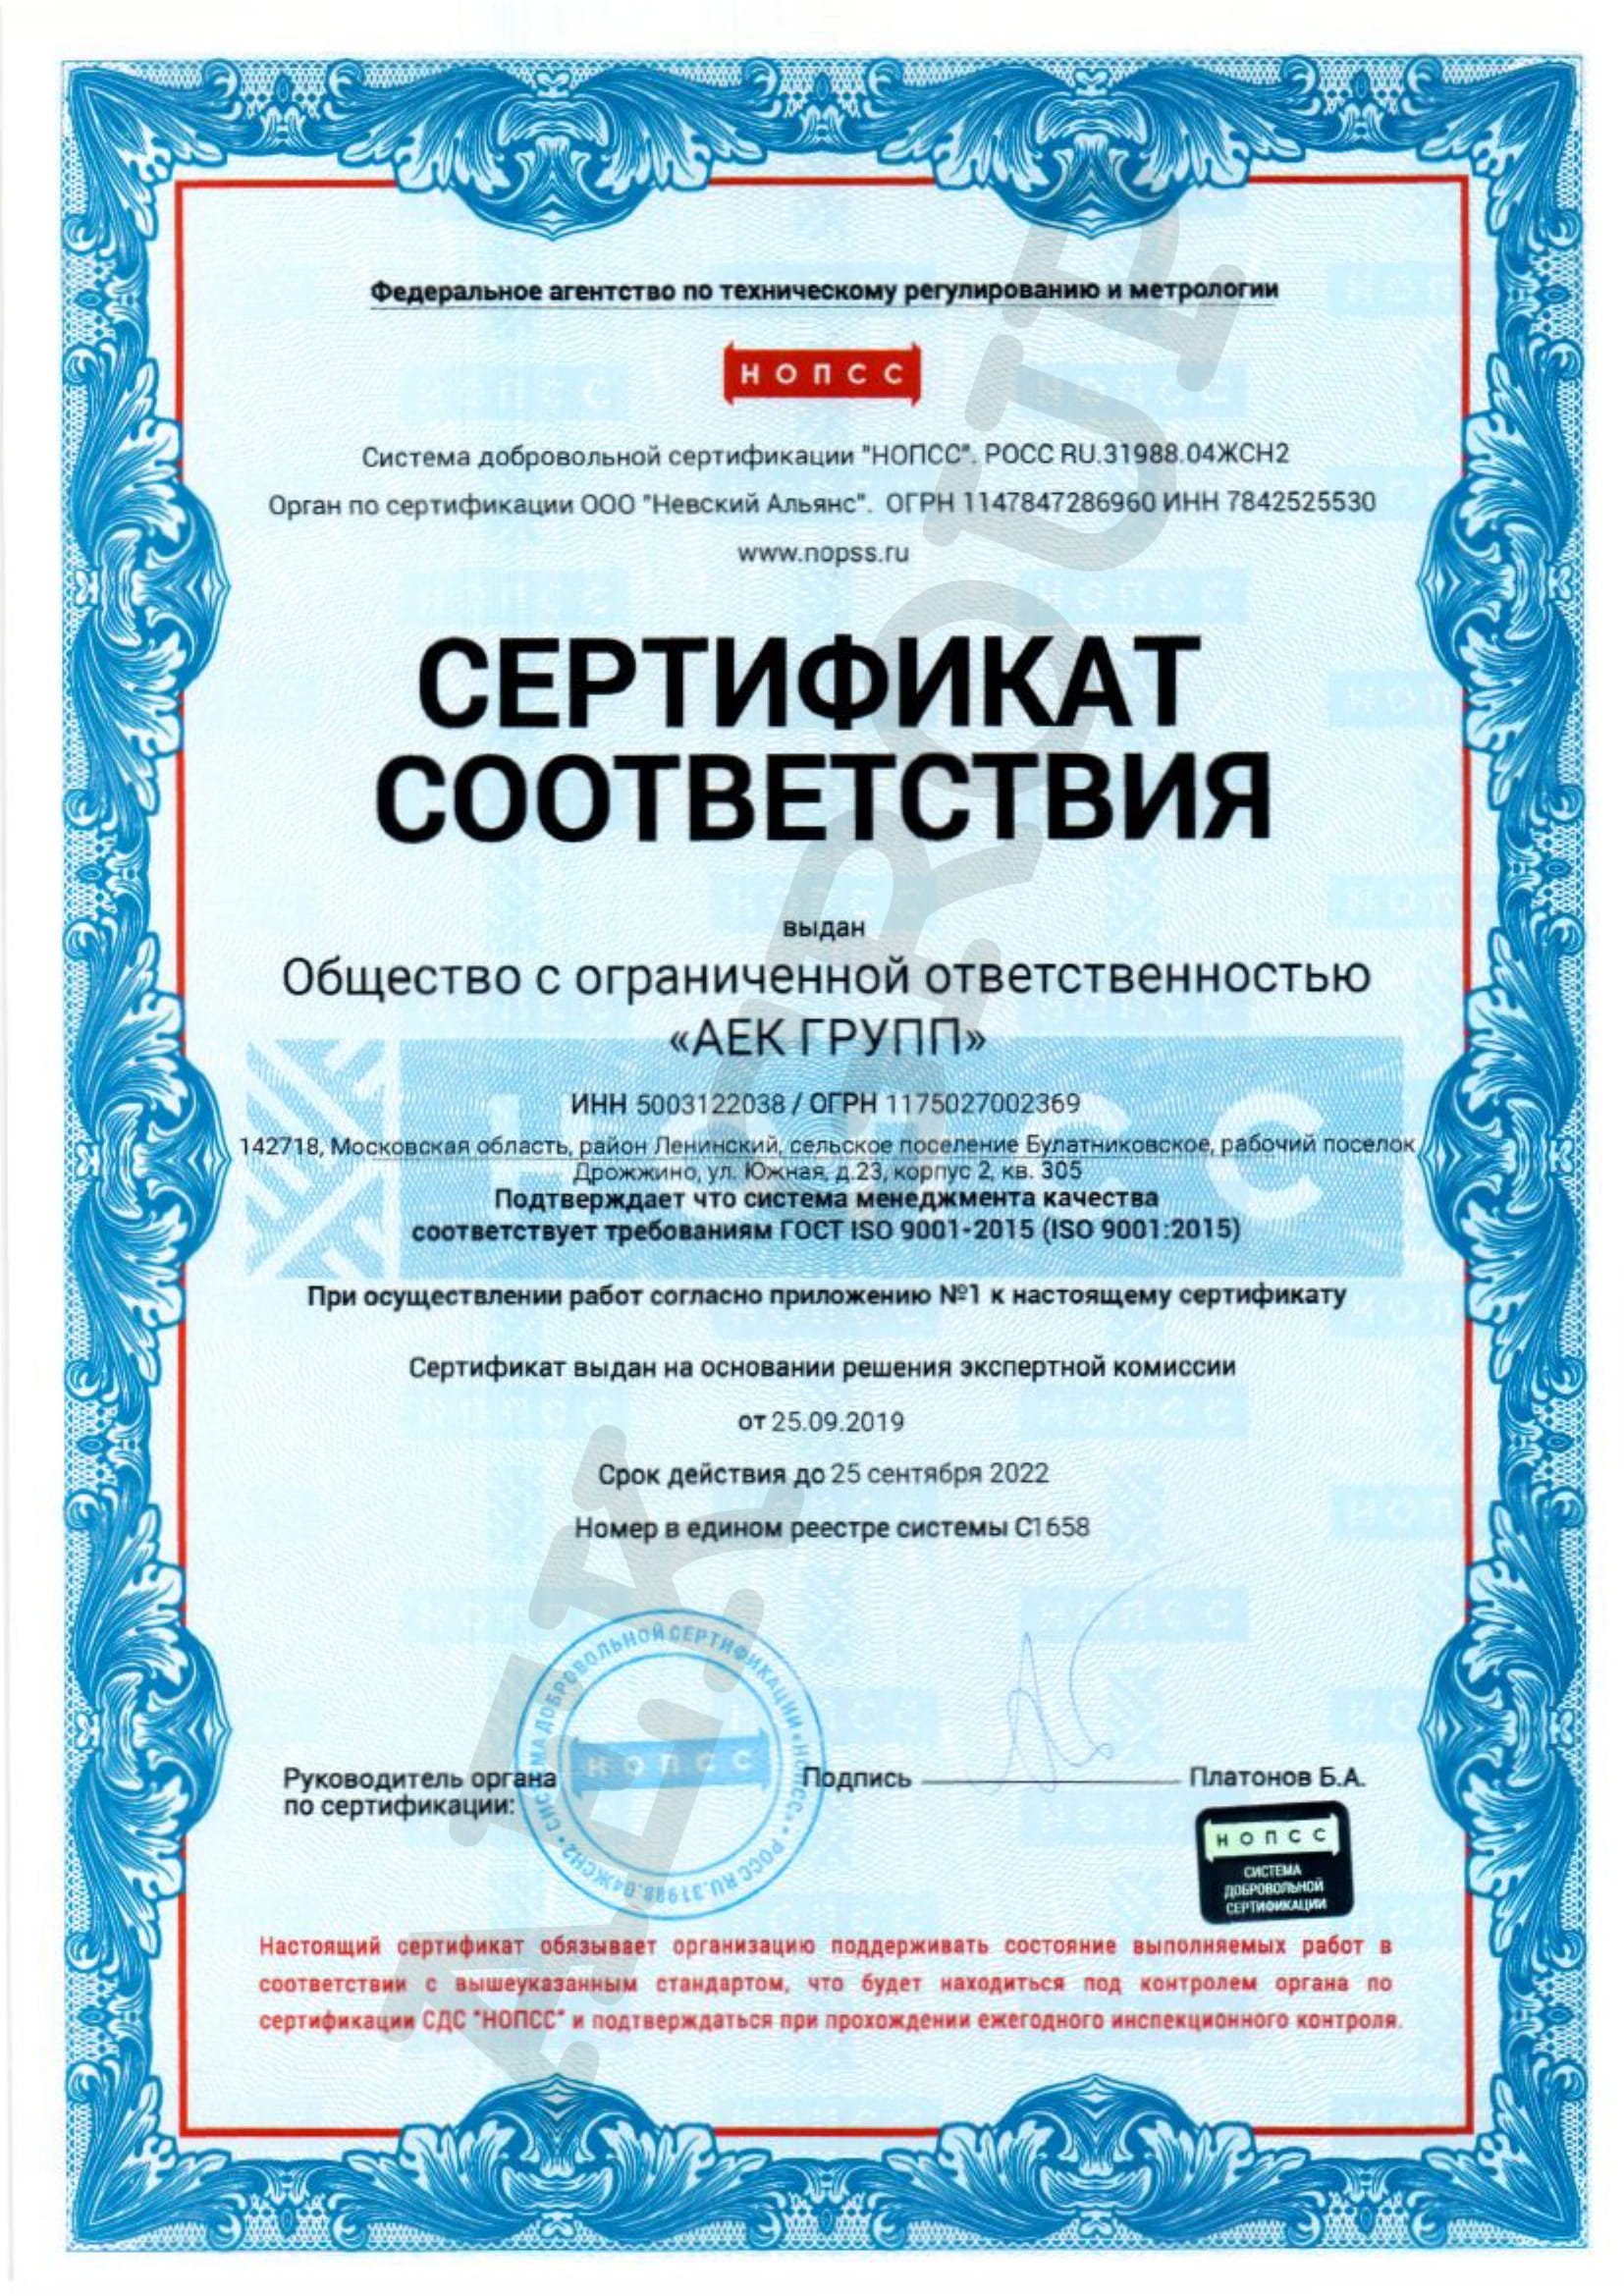 Сертификат соответветствия ООО АЕК ГРУПП